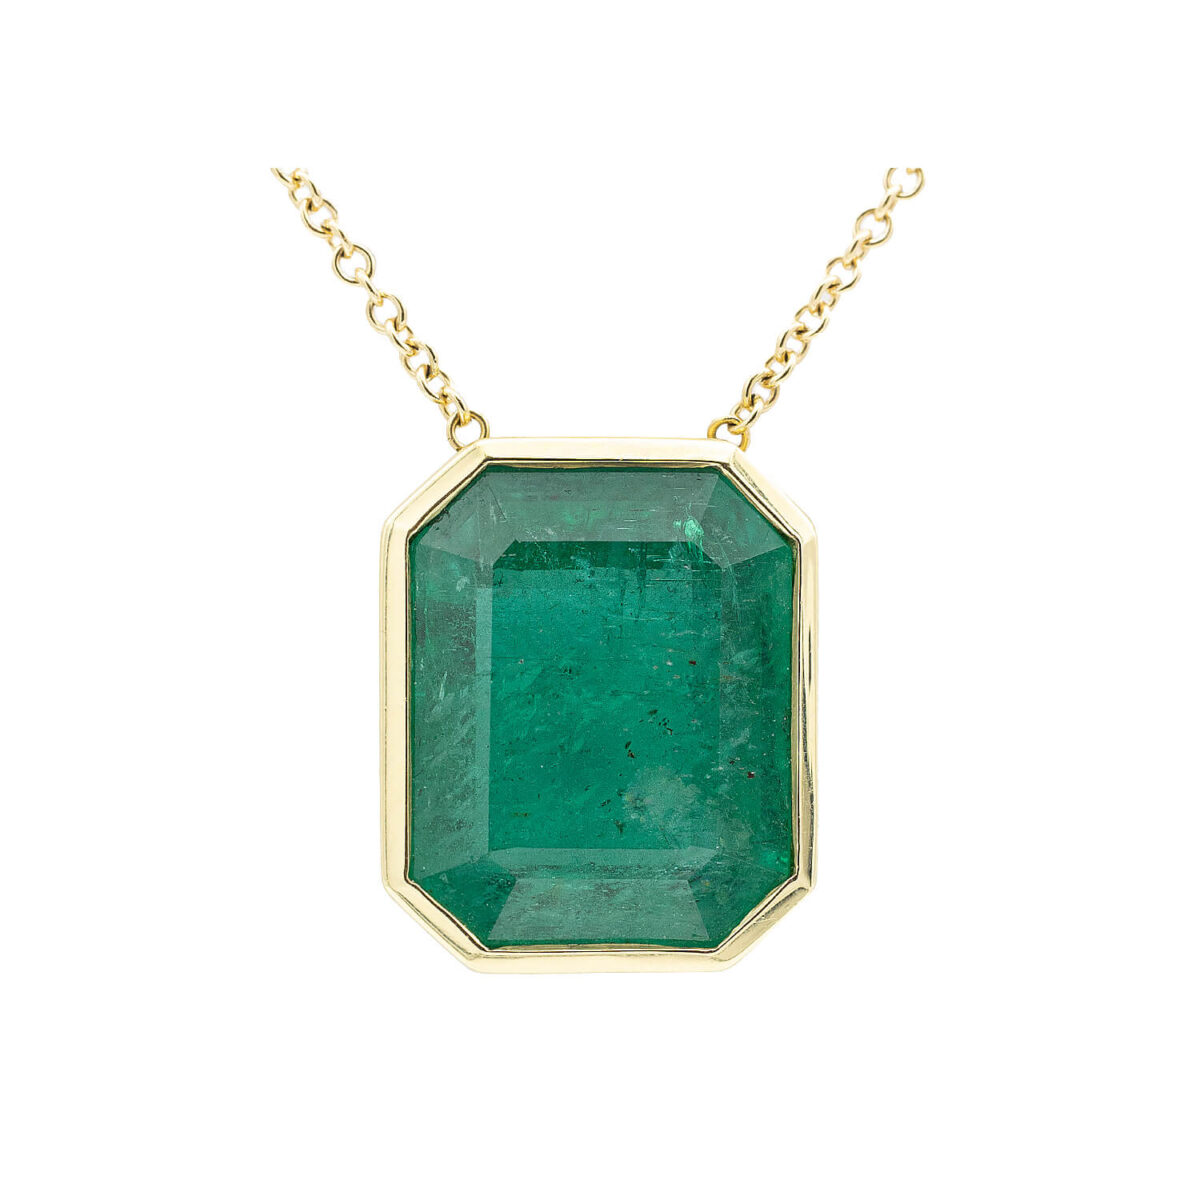 13.71 Carat Emerald Pendant Necklace